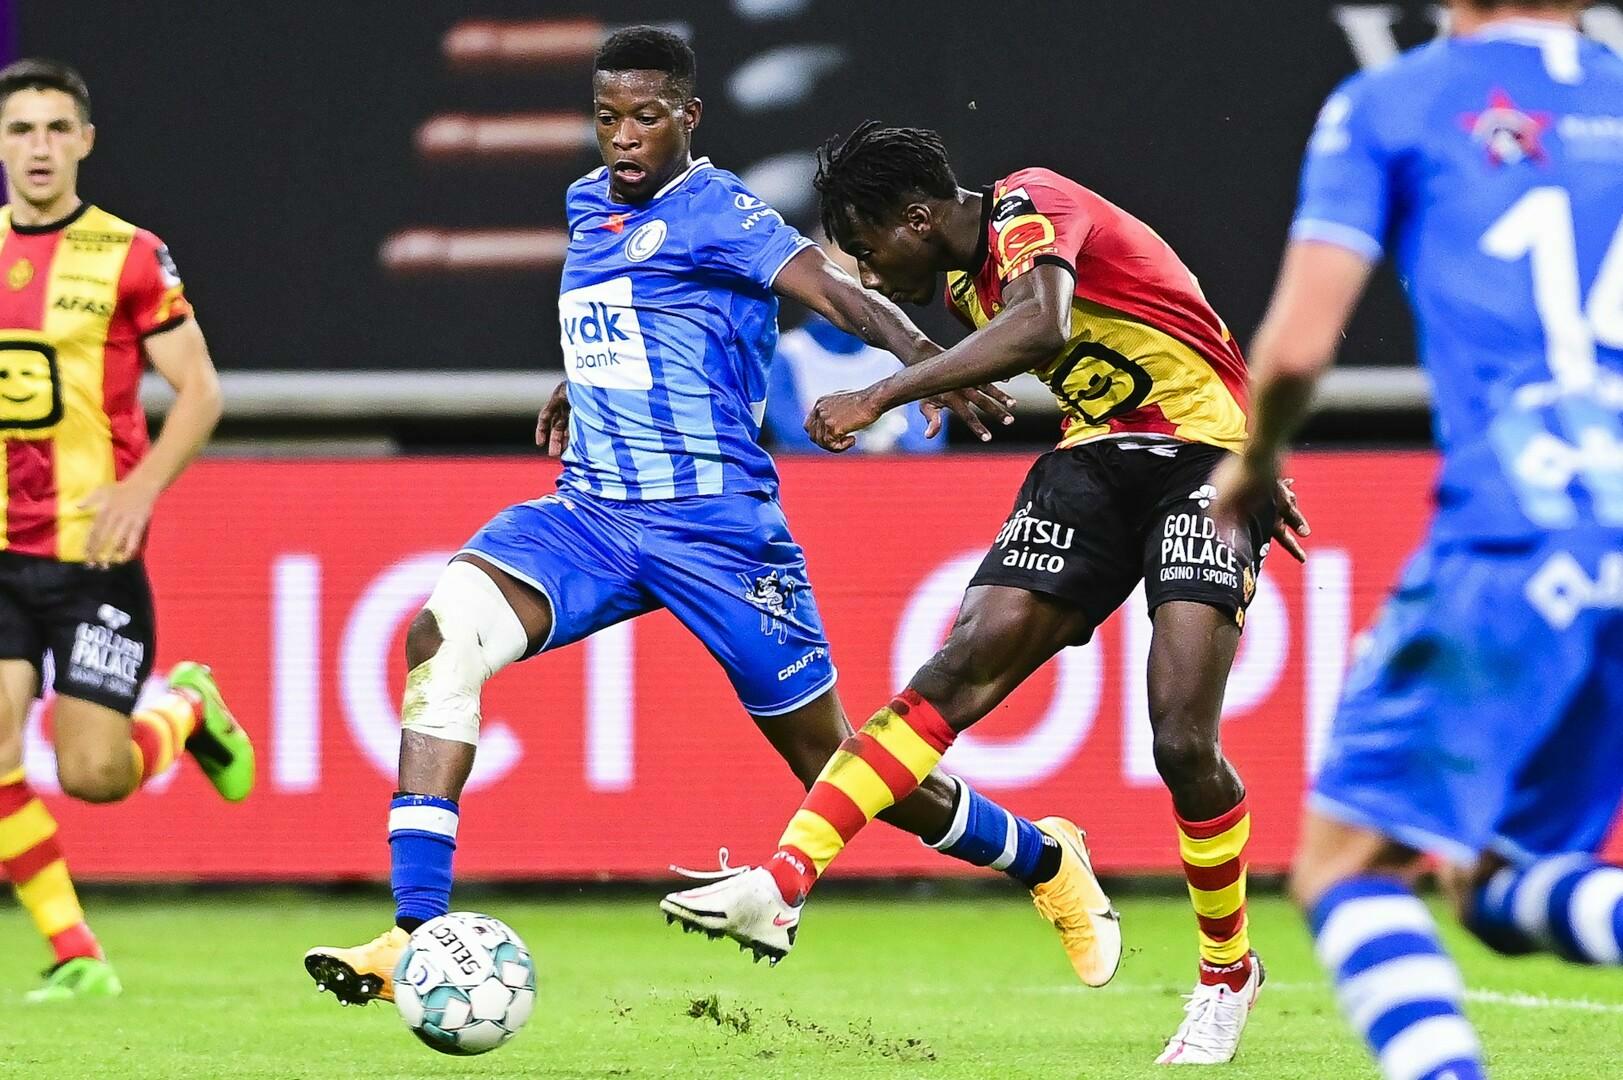 Gantoise Facts: KV Mechelen - KAA Gent (MD 27)